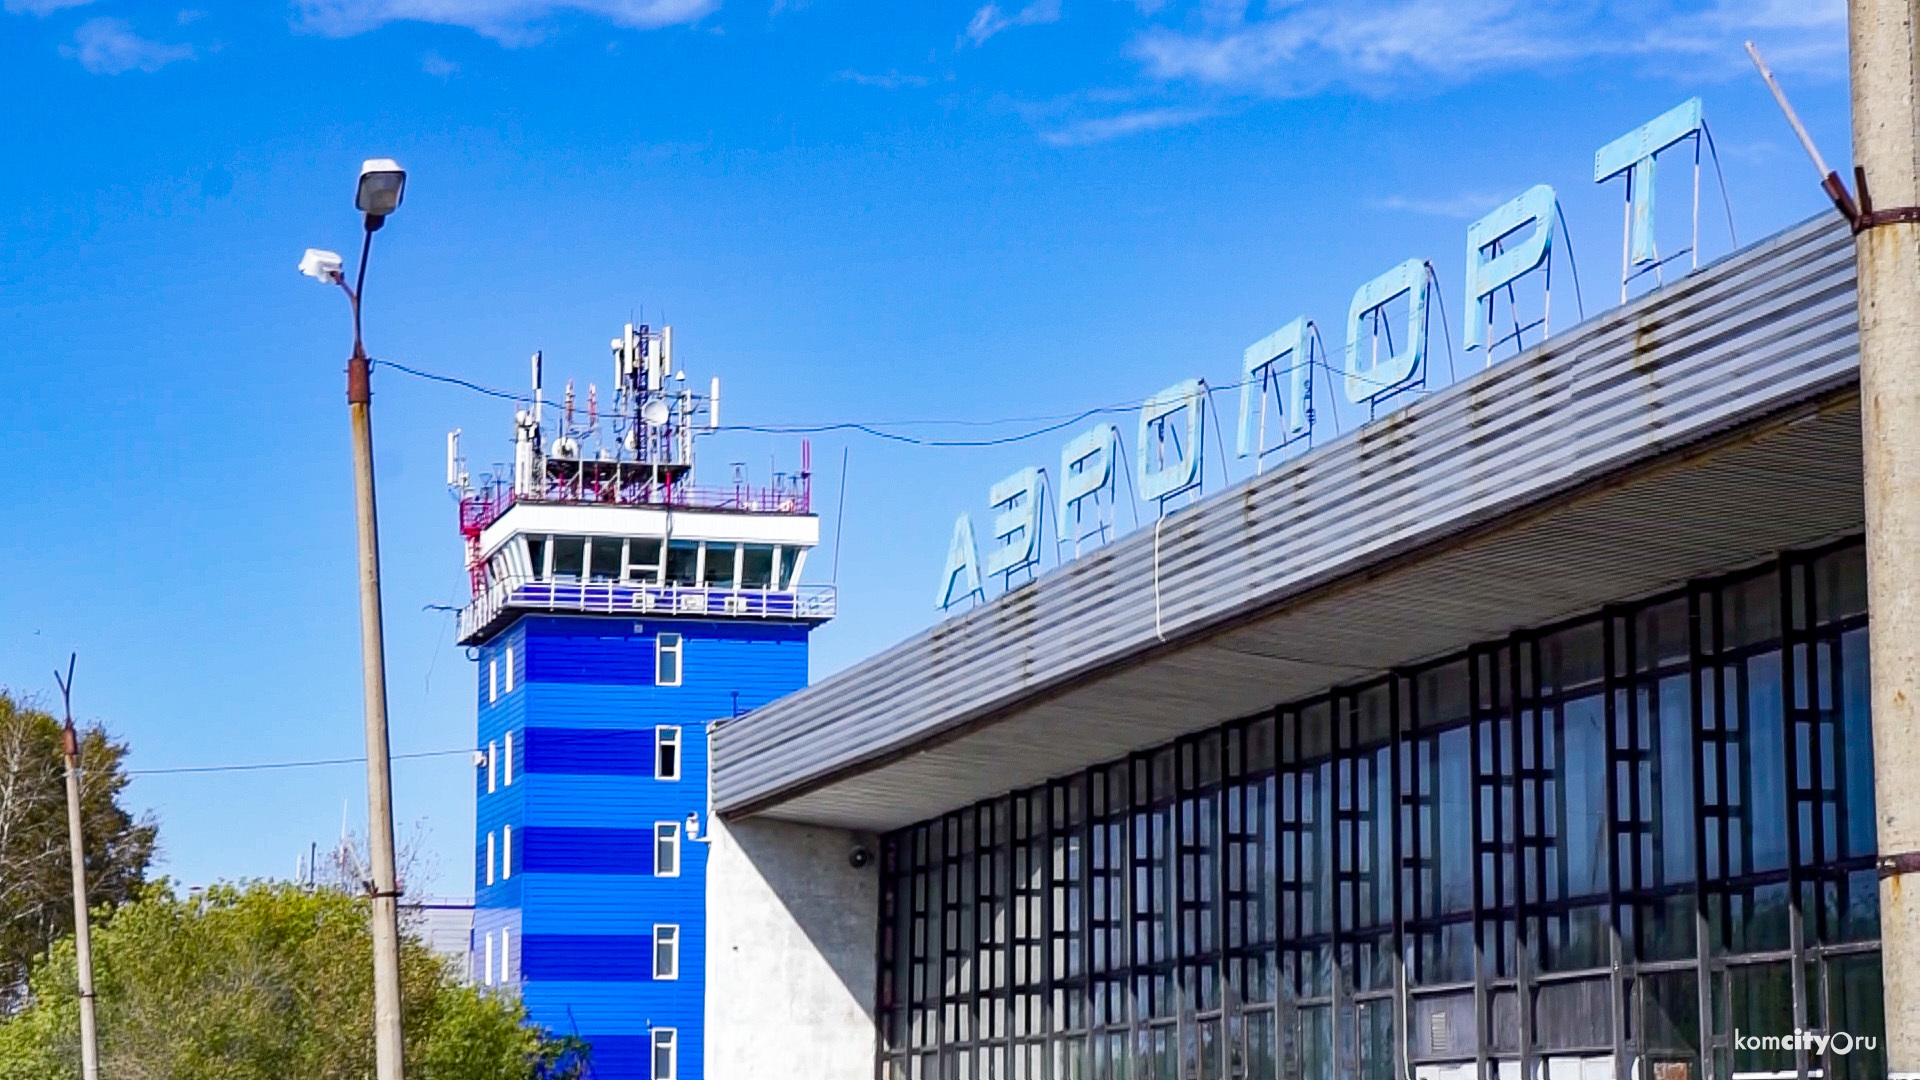 Аэрофлот пожаловался на слишком дорогое обслуживание в аэропорту Комсомольска-на-Амуре